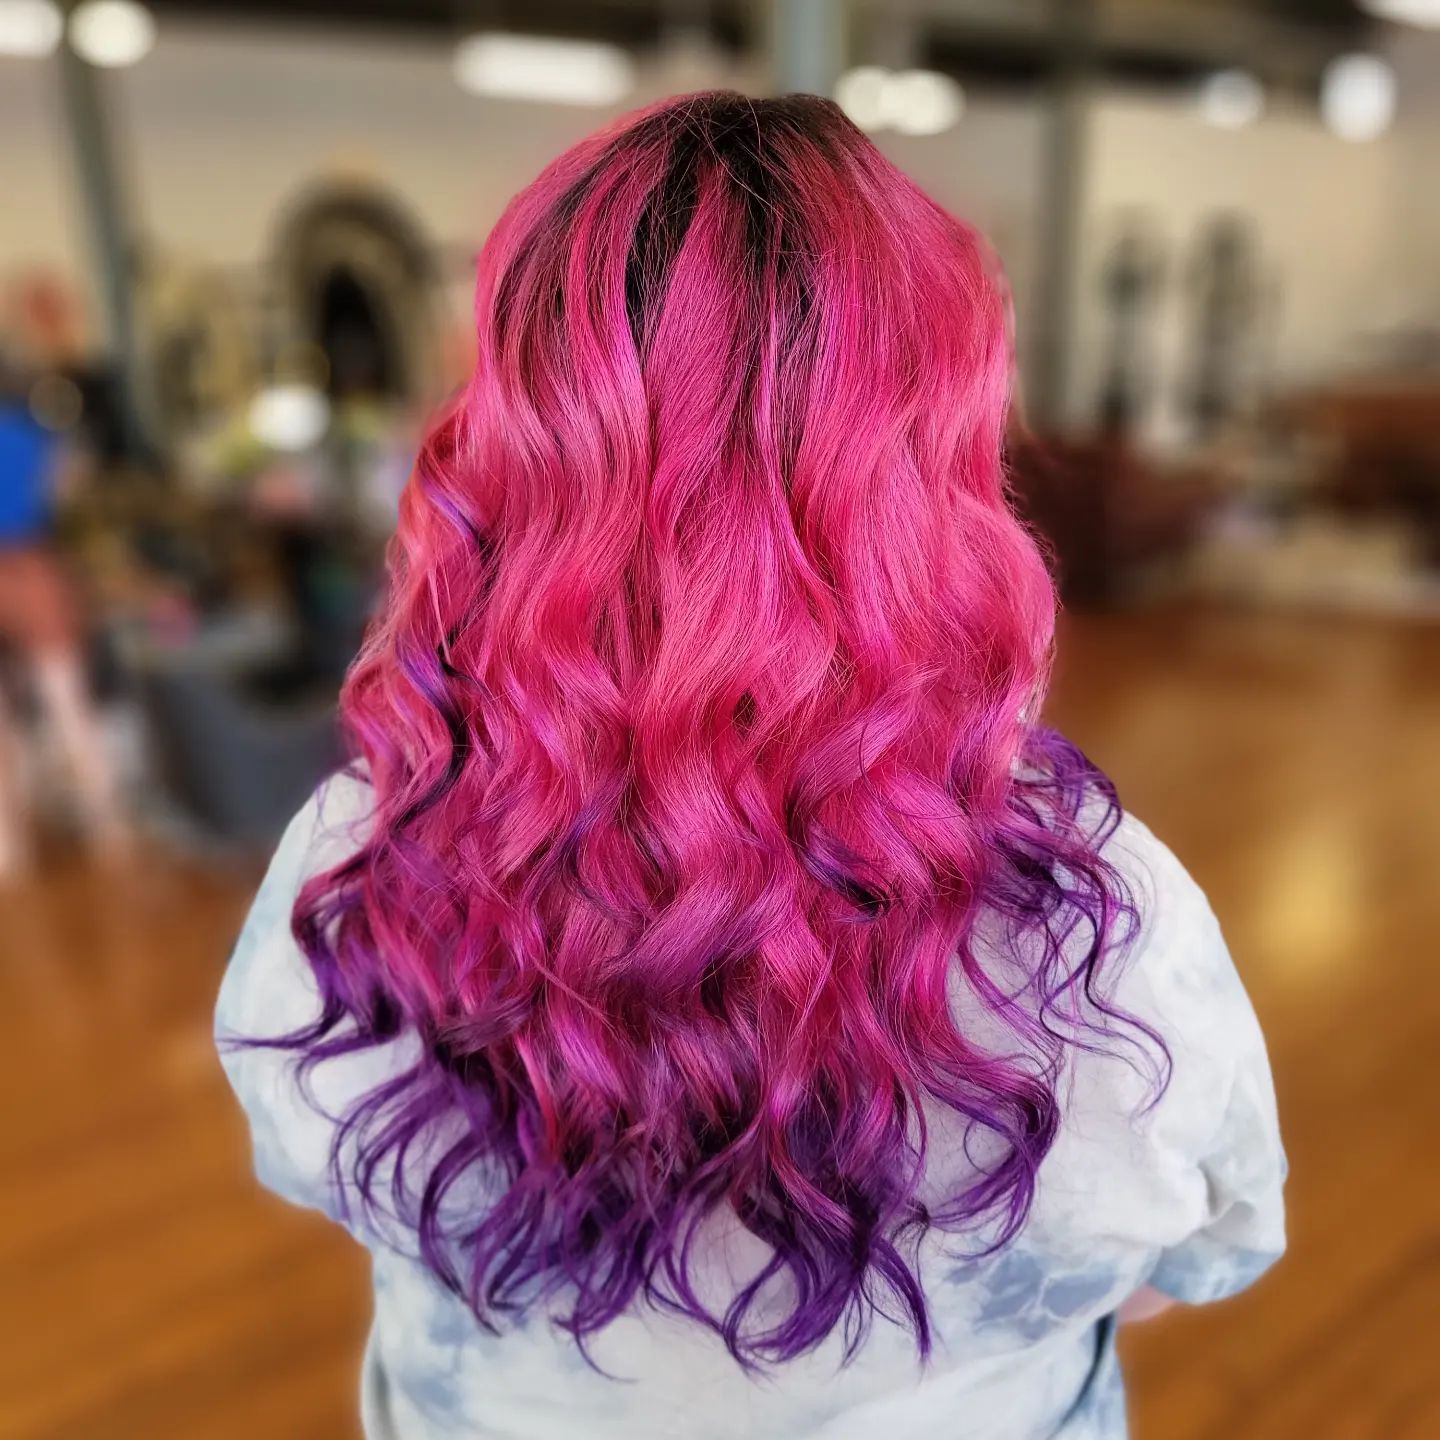 Leuchtend rosafarbenes Haar mit violetten Spitzen